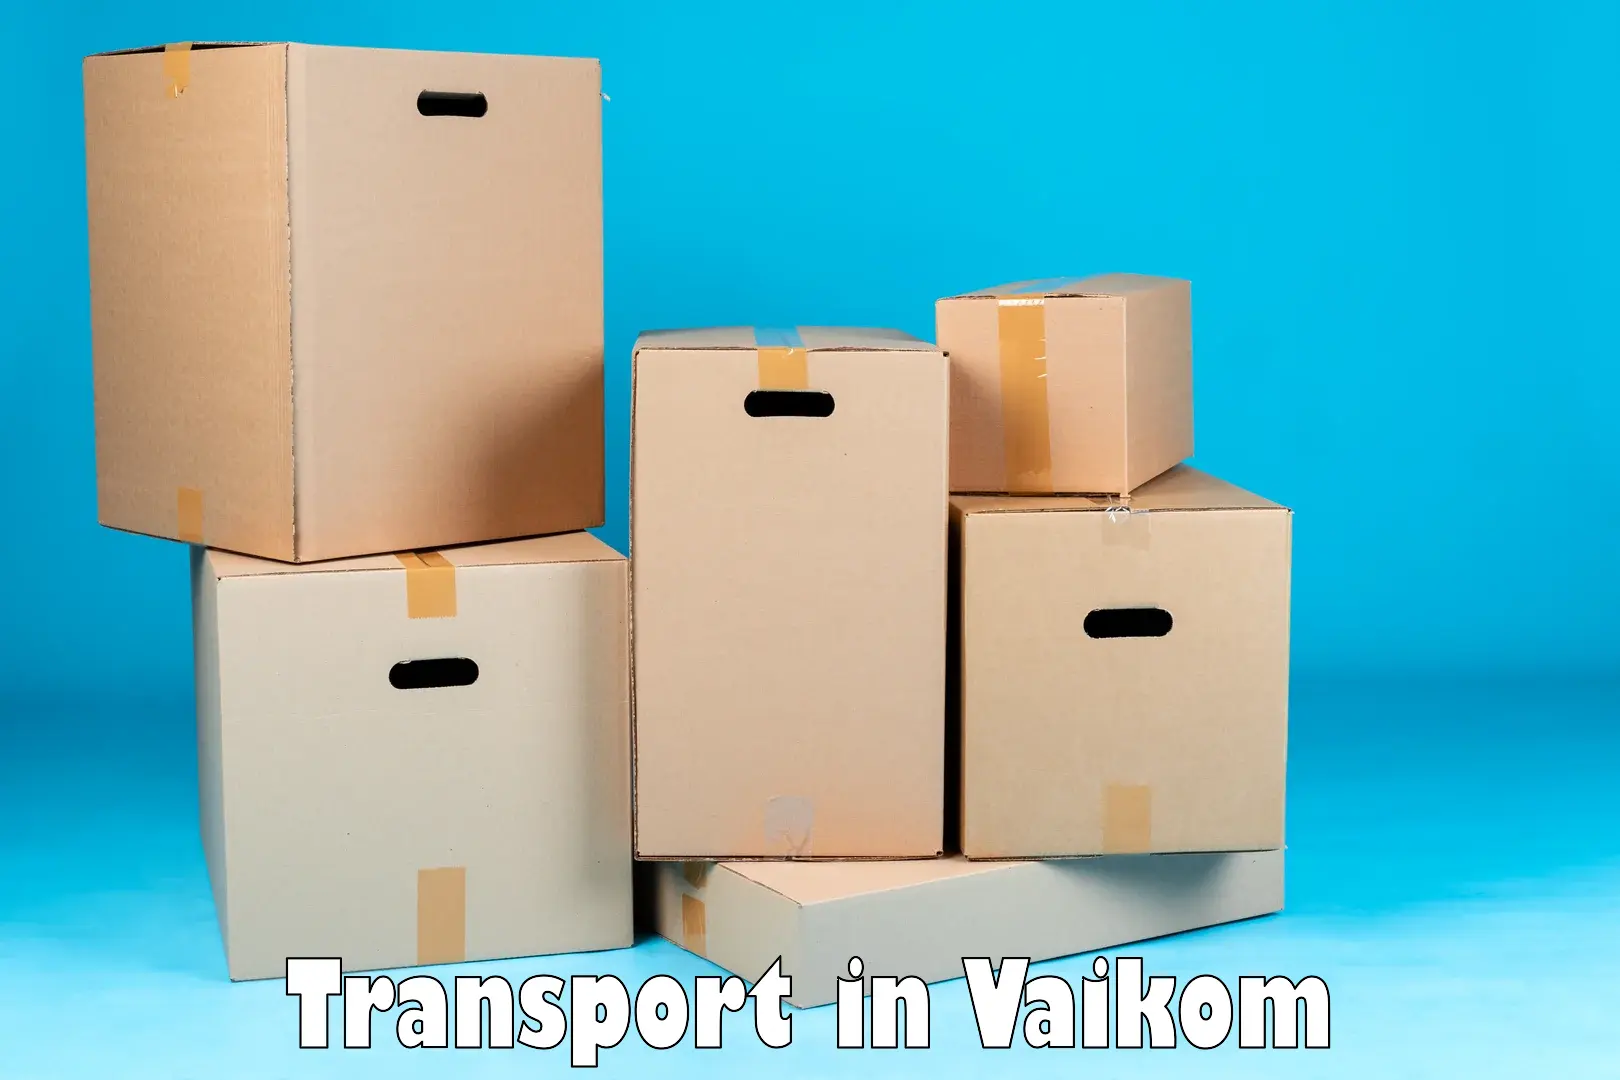 Cargo transport services in Vaikom